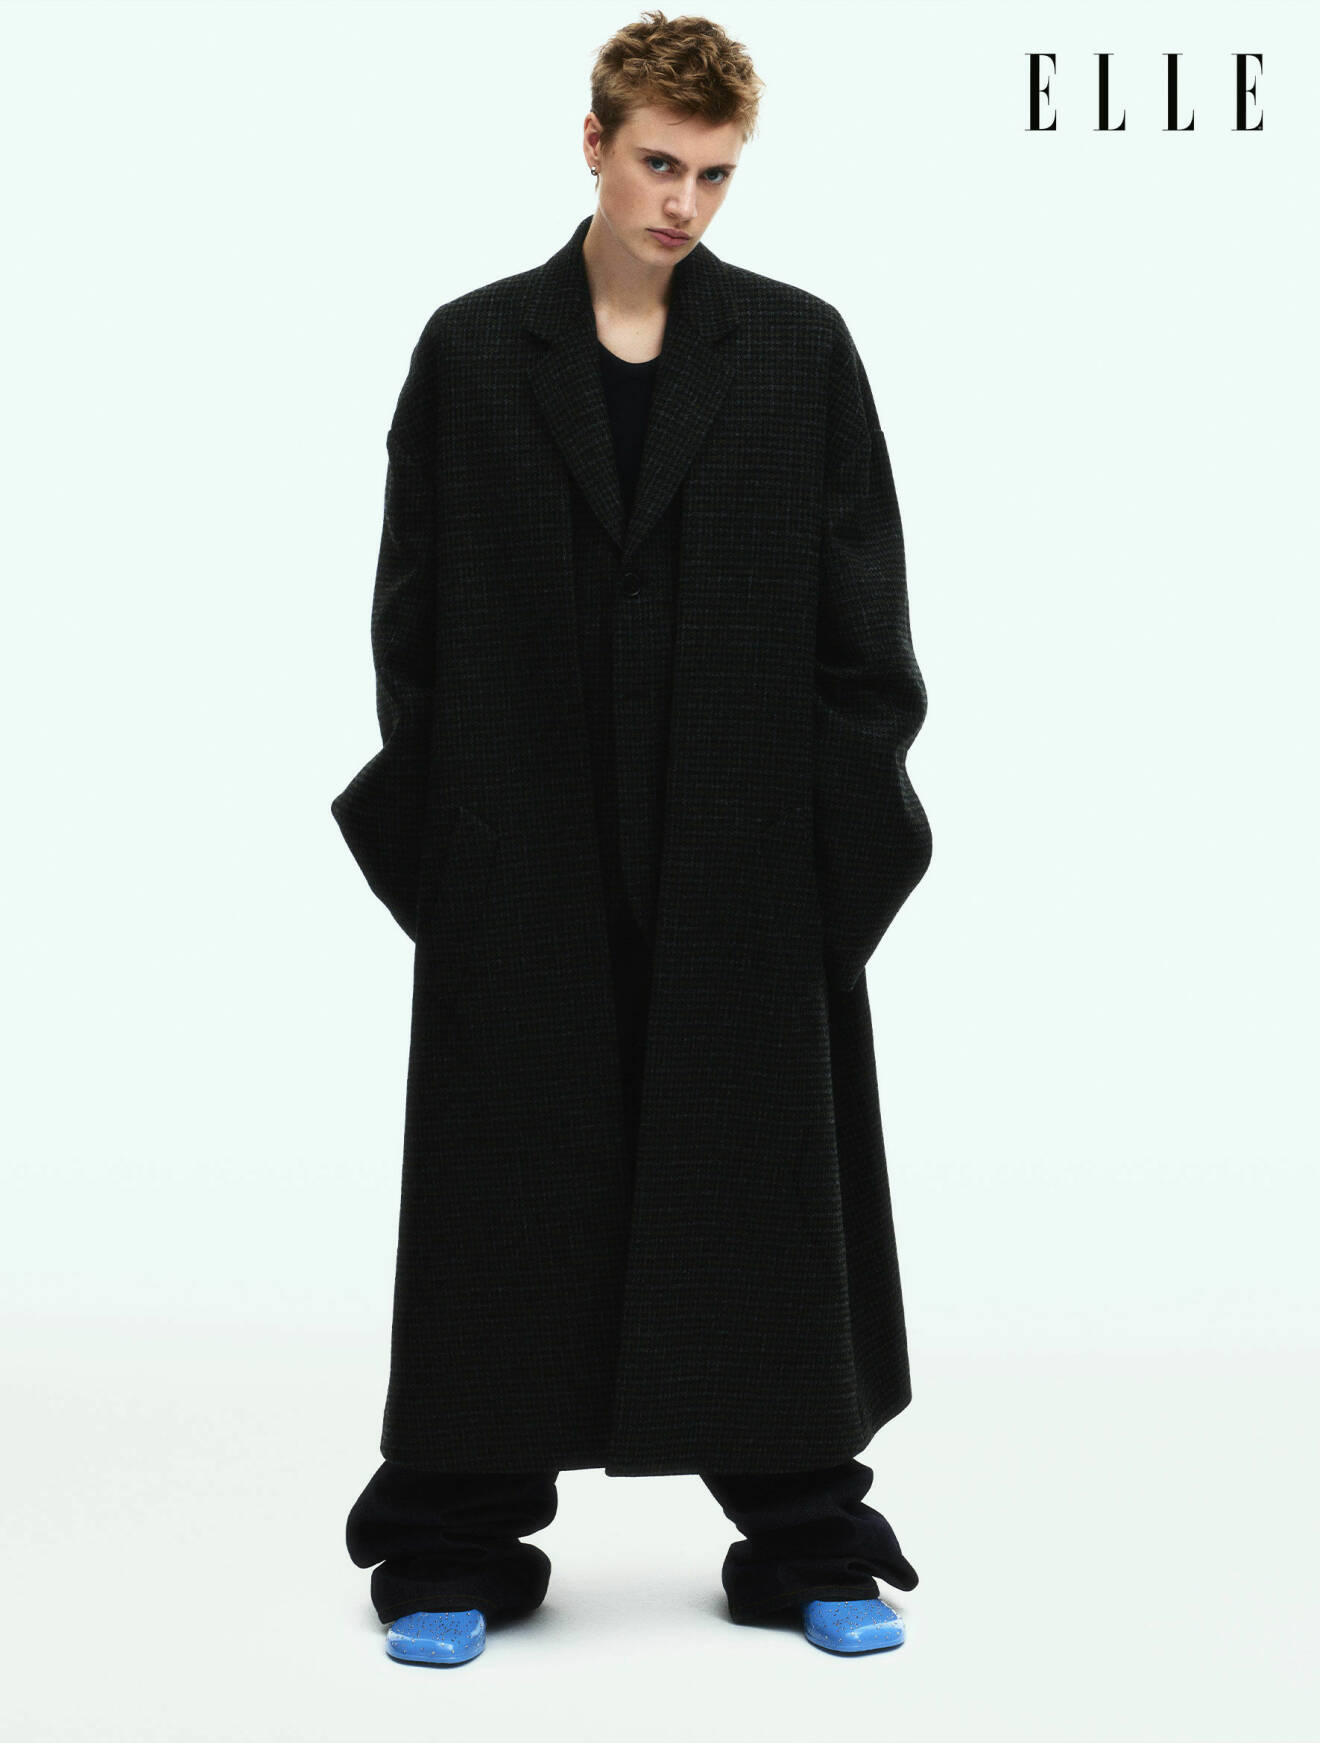 Modellen Elio Berenett är klädd i svart kappa, jeans och blåa skor, allt från Loewe.